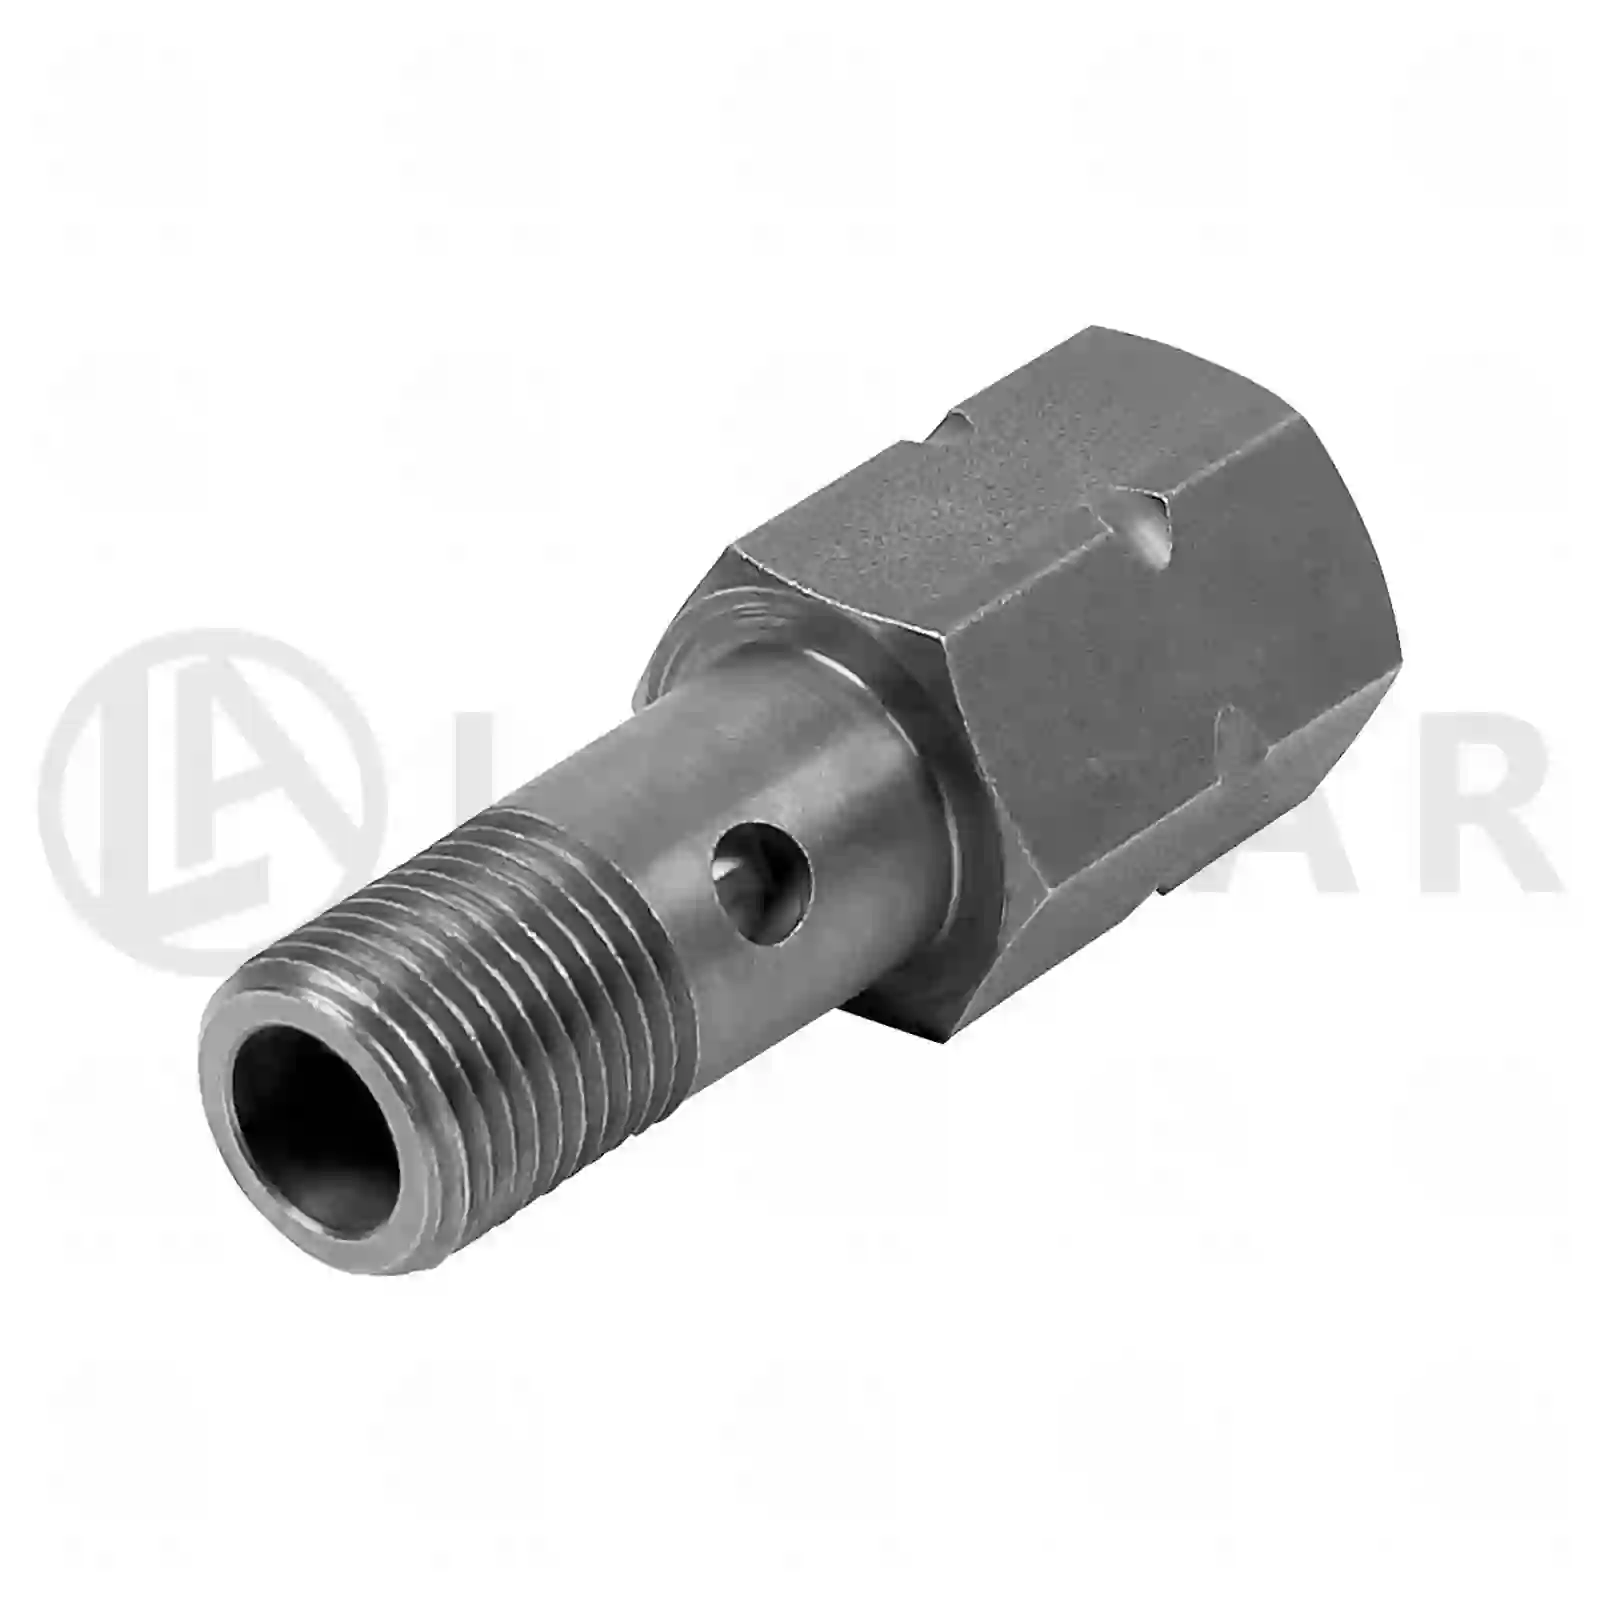 Injection Pump Overflow valve, la no: 77723997 ,  oem no:7420754813, 20754813, 20776177 Lastar Spare Part | Truck Spare Parts, Auotomotive Spare Parts